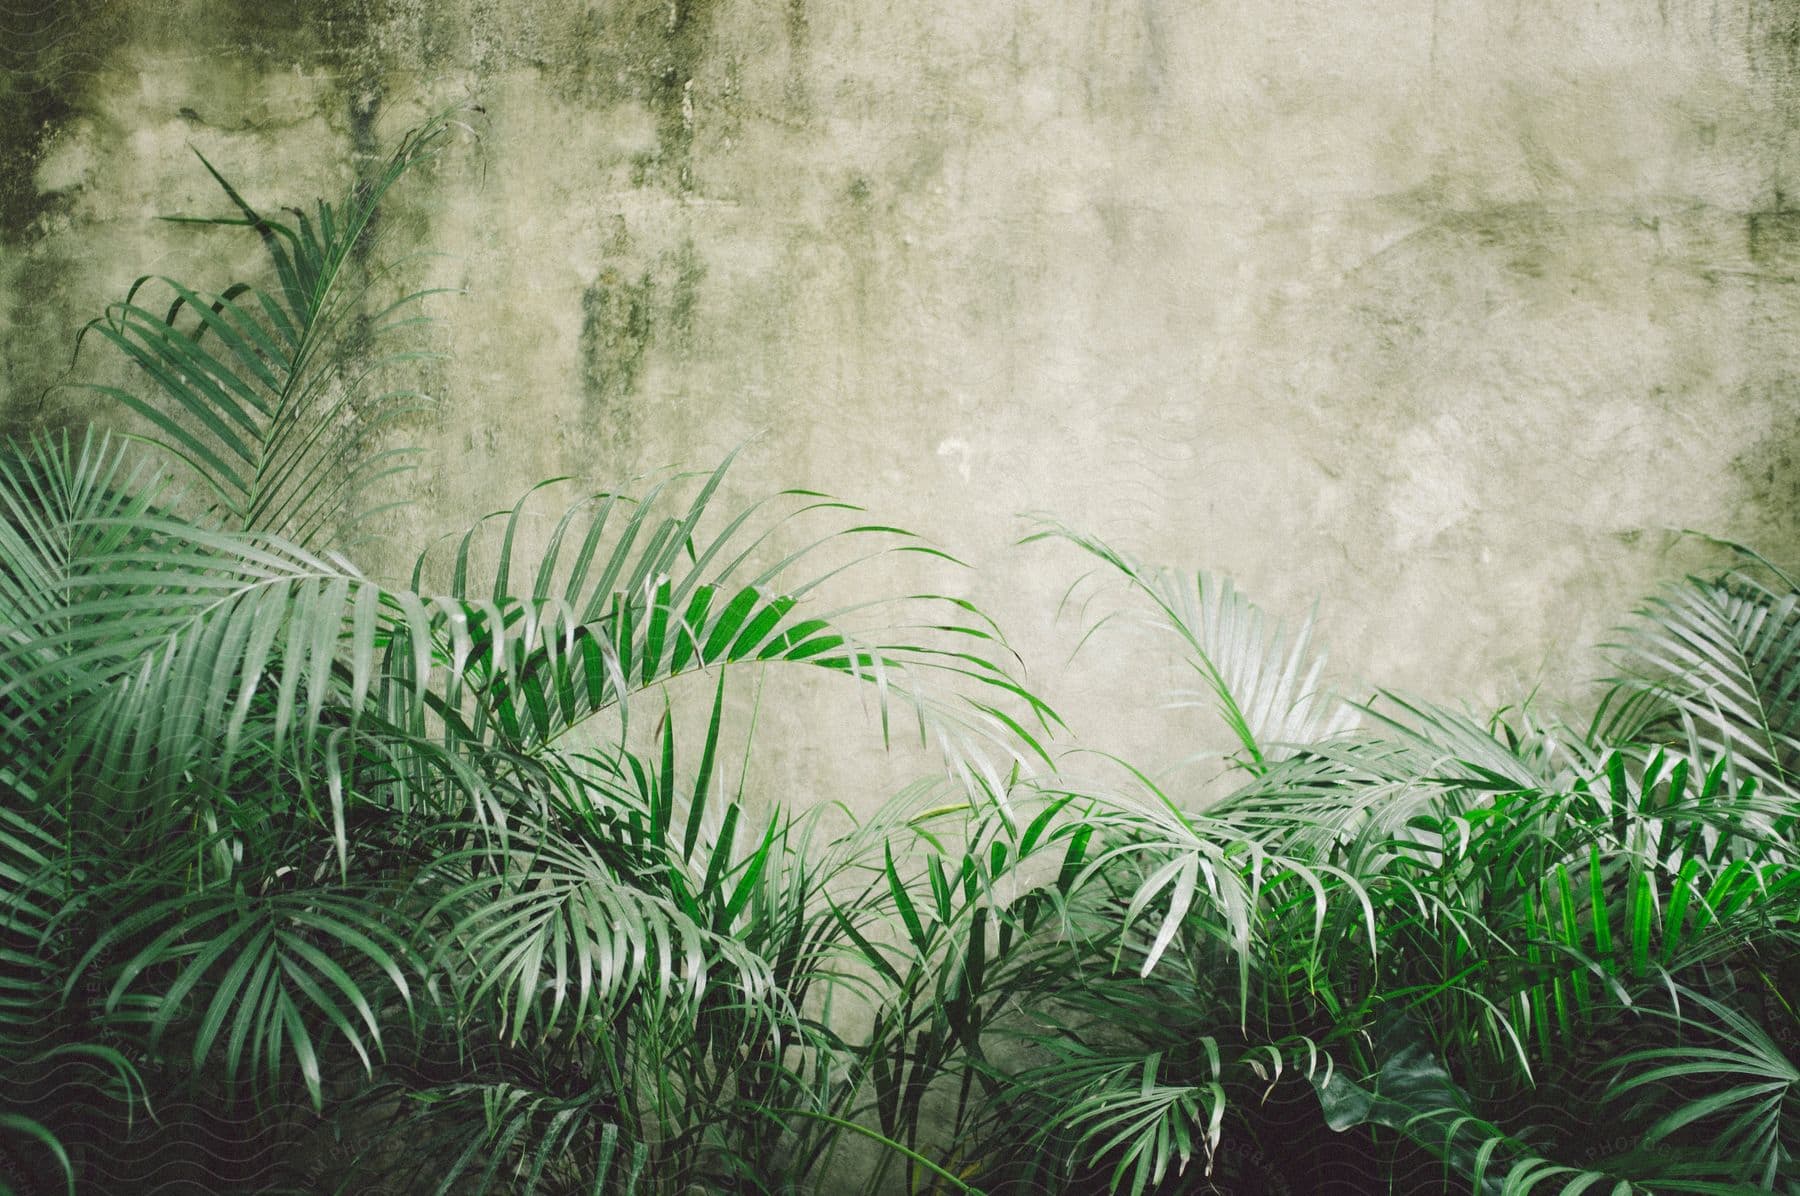 Ferns growing against a grey wall